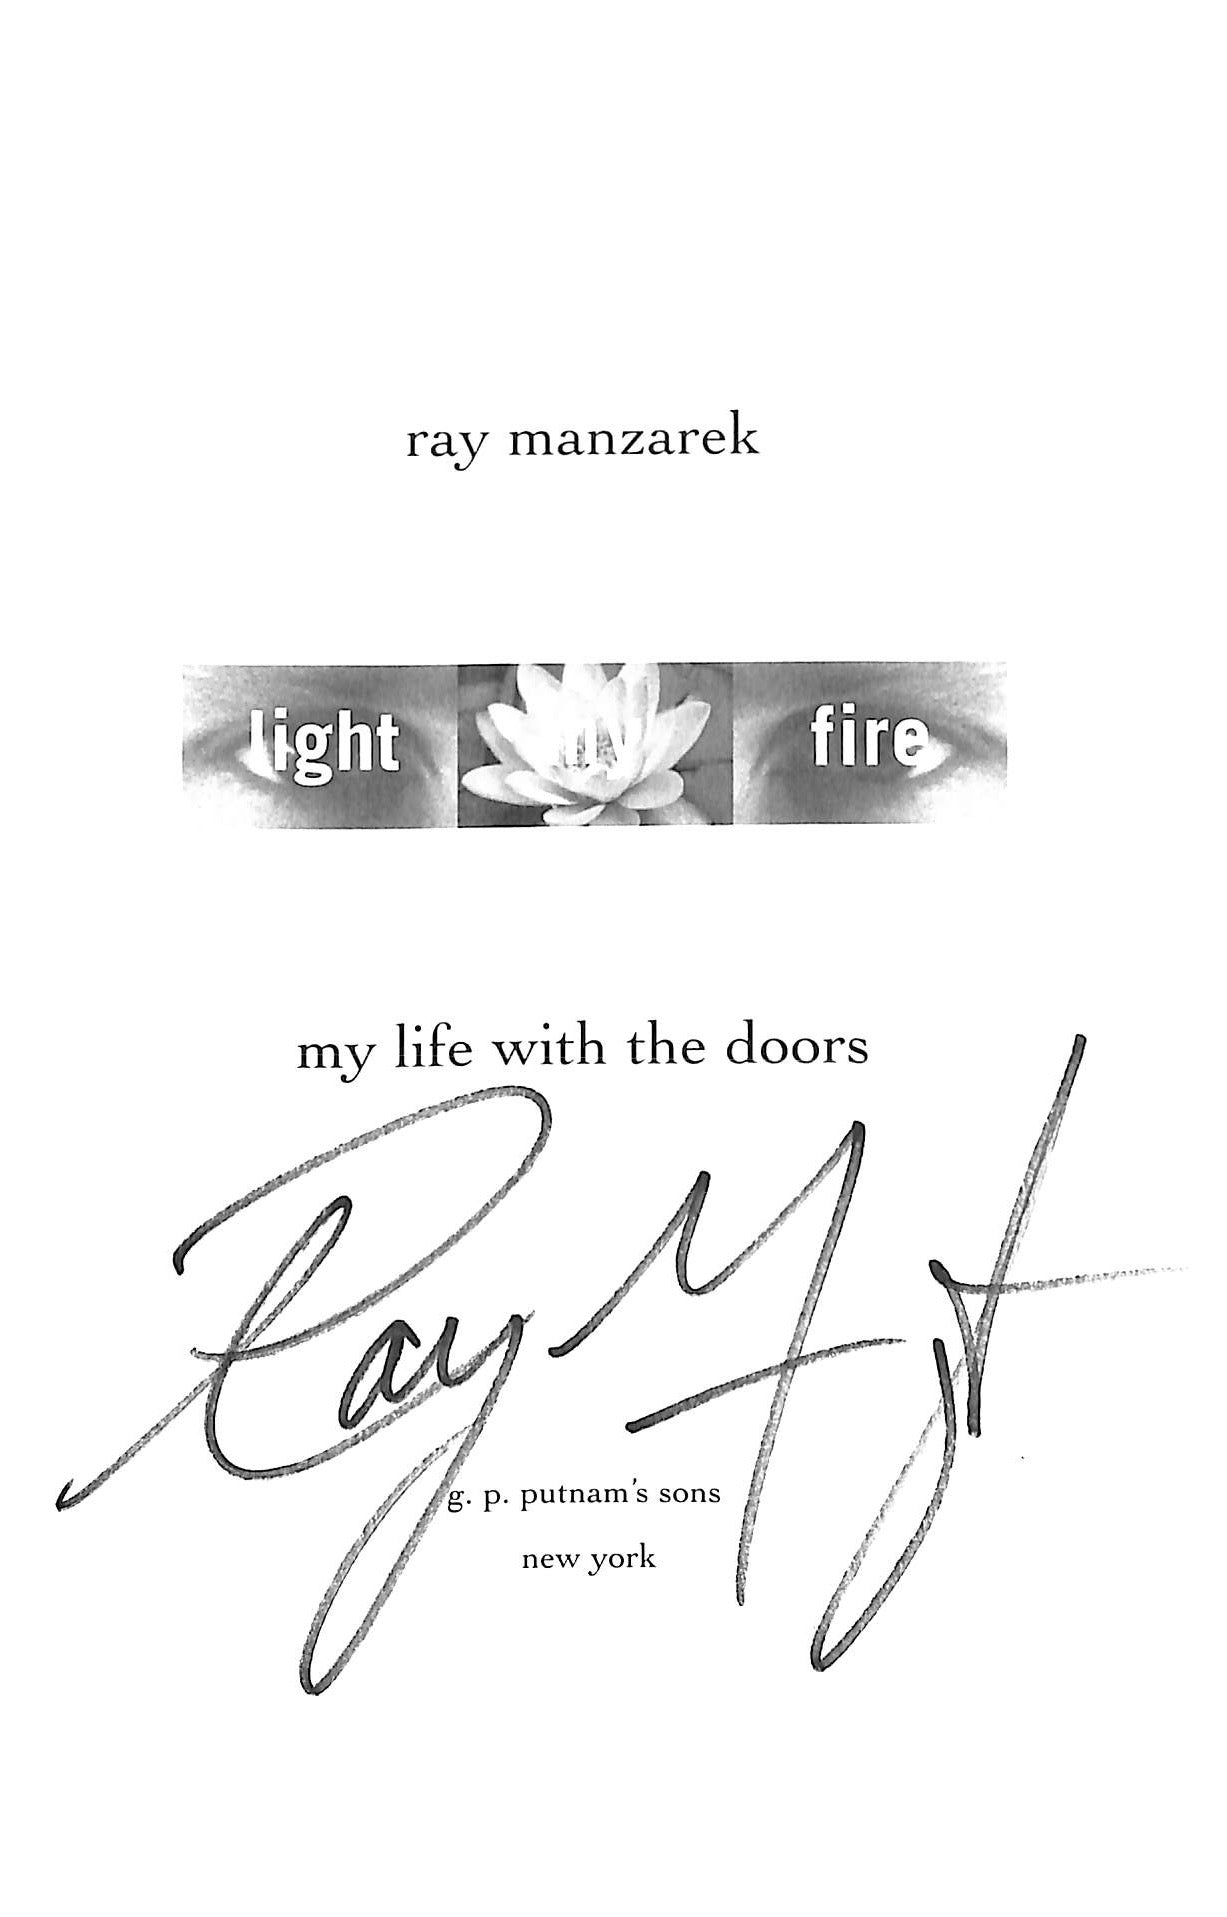 Ray Manzarek: Raymond Daniel Manzarek Jr. (Born Manczarek February